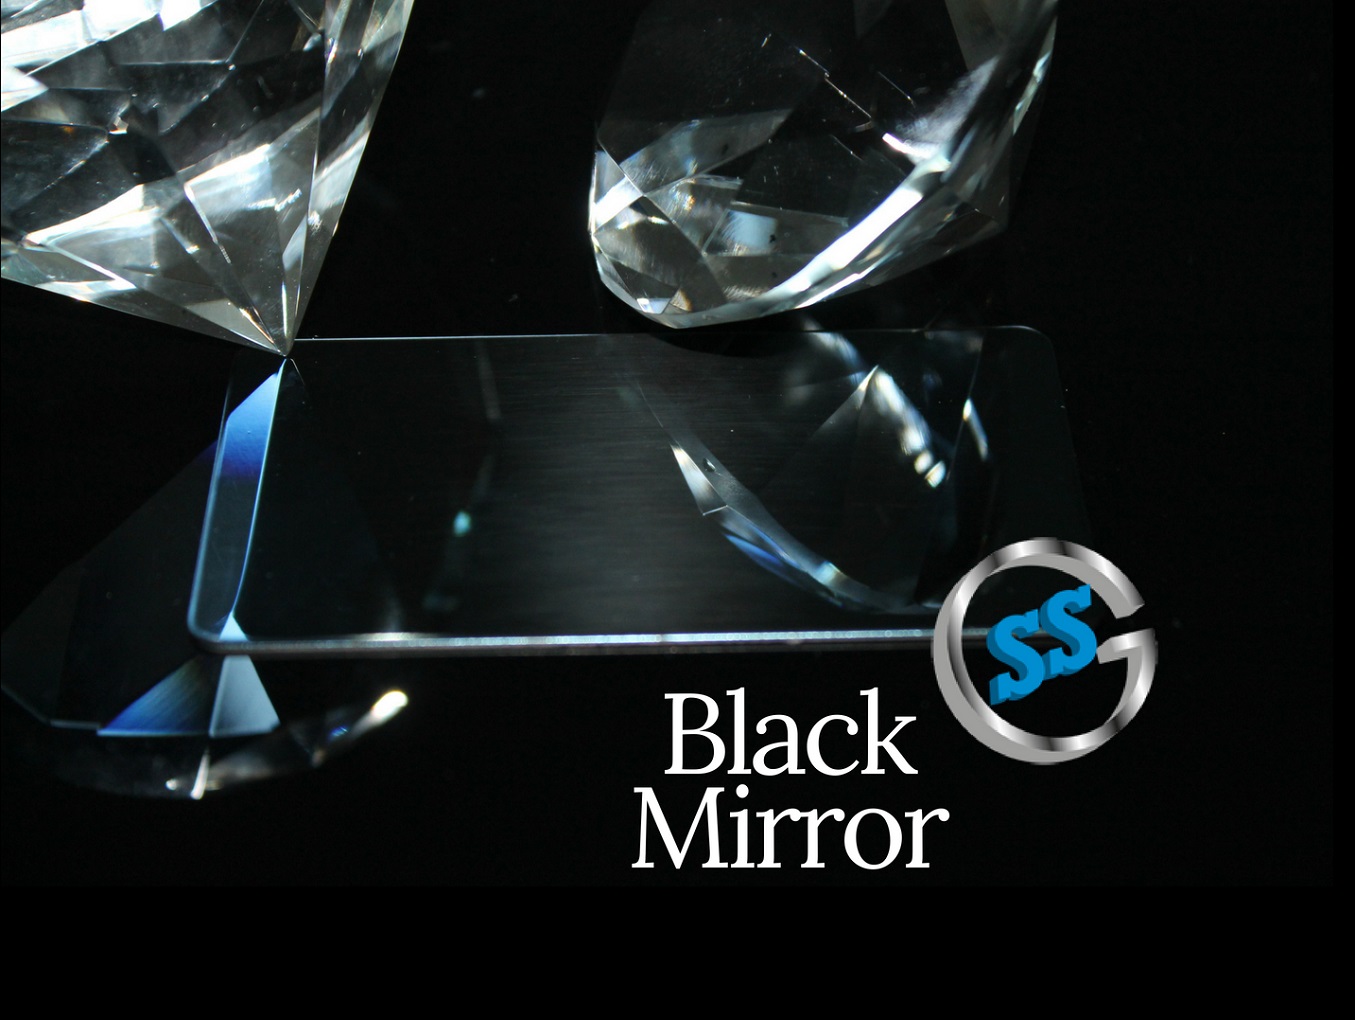 Inox colorato galvanico ColourTex Black Mirror, inox elettro-colorato black mirror, inox colorato nero a specchio